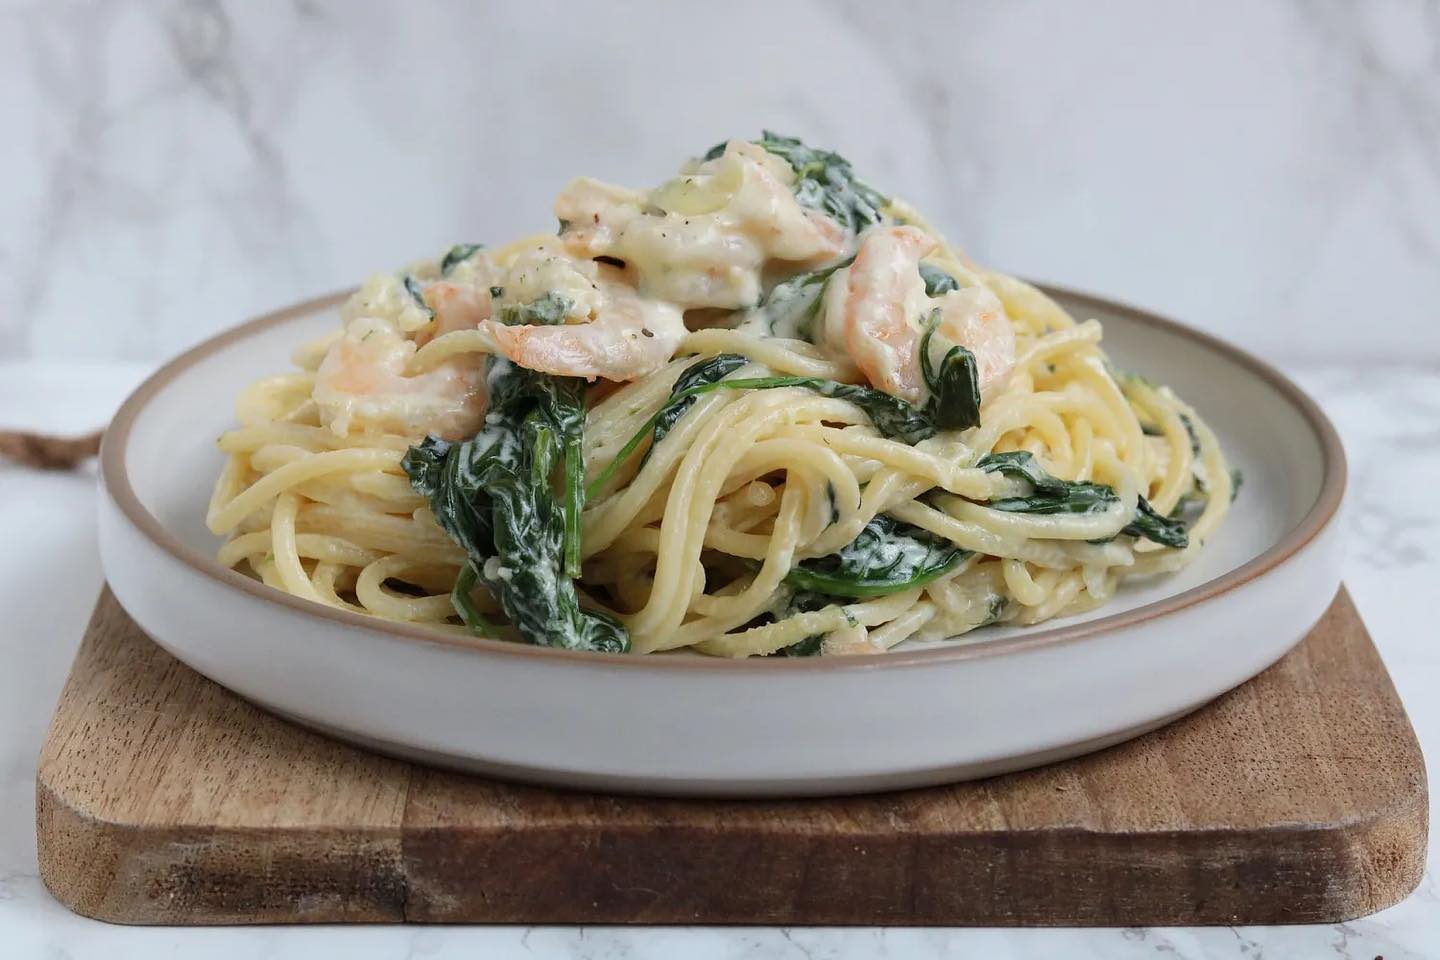 Dit is mijn favoriete pasta. Spaghetti met knoflook, garnalen en spinazie met romige kaassaus! 😍

Hebben jullie deze al eens geprobeerd?

Fijn weekend alvast! X

Het recept vind je op mijn website!

#koolhydraatarm #koolhydraatarmrecept #oanhskitchen #keto #lowcarb